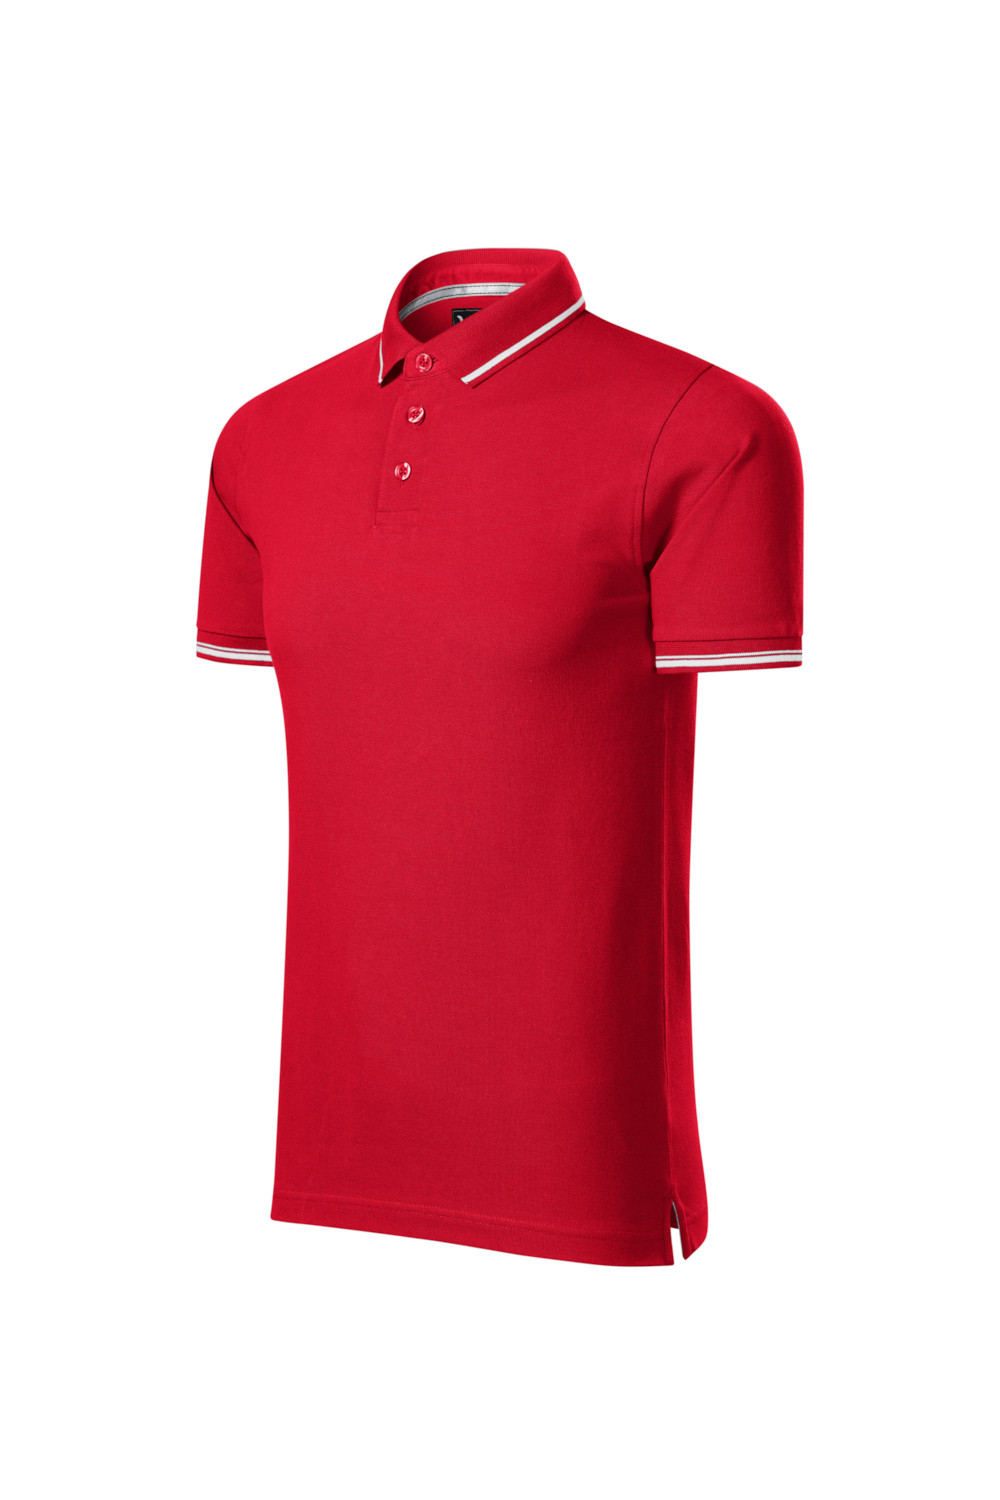 Koszulka Polo męska 95% bawełna 5% elastan 251 czerwony